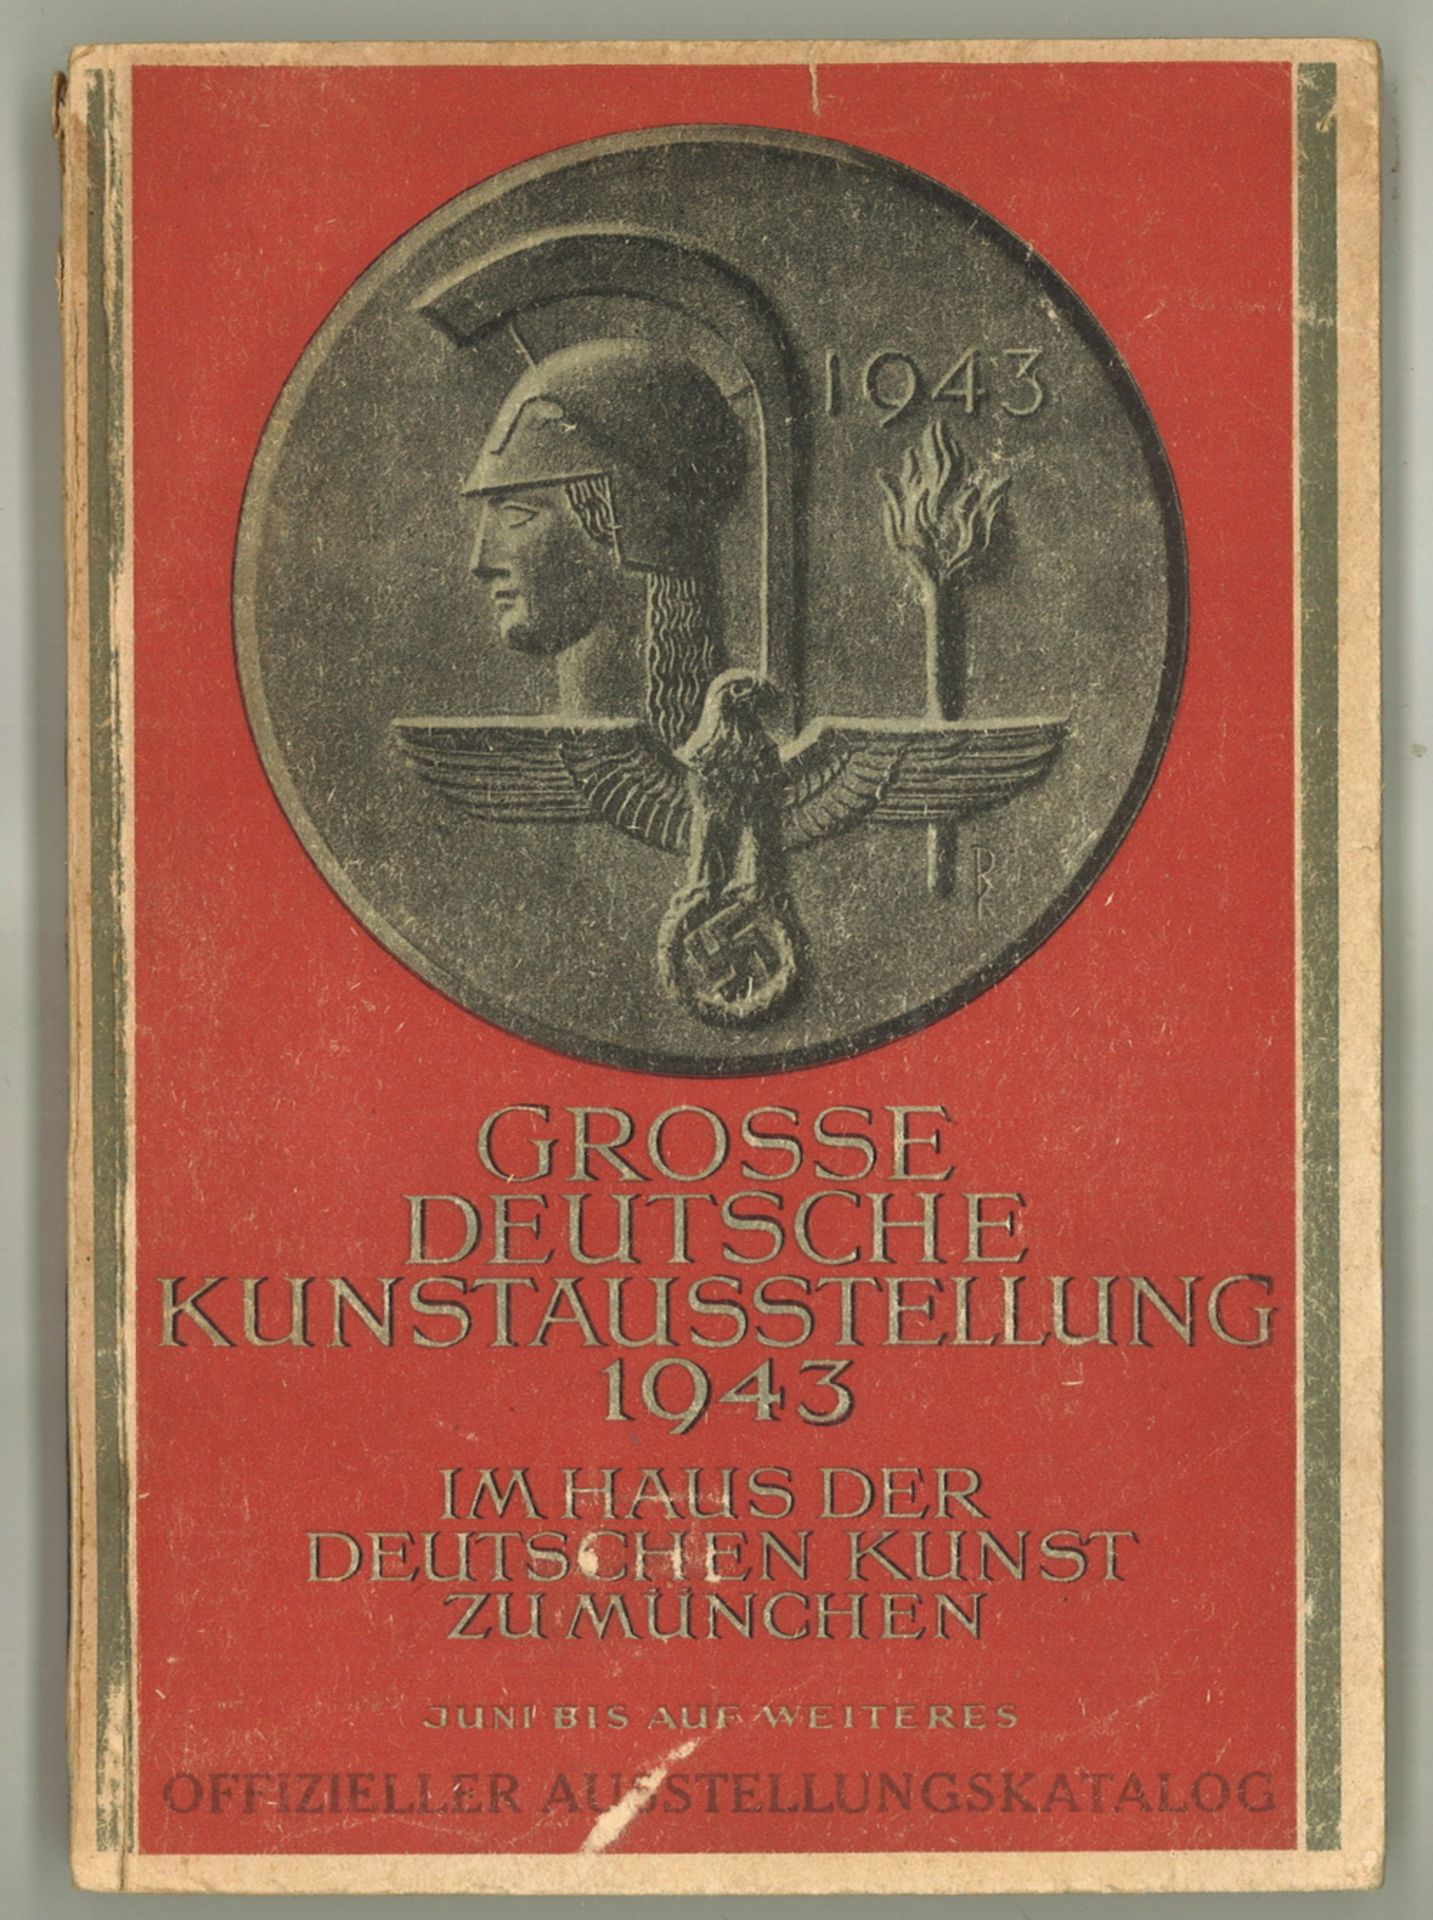 "Große Deutsche Kunstausstellung 1943" im Haus der deutschen Kunst zu München ab Juni. Offizieler